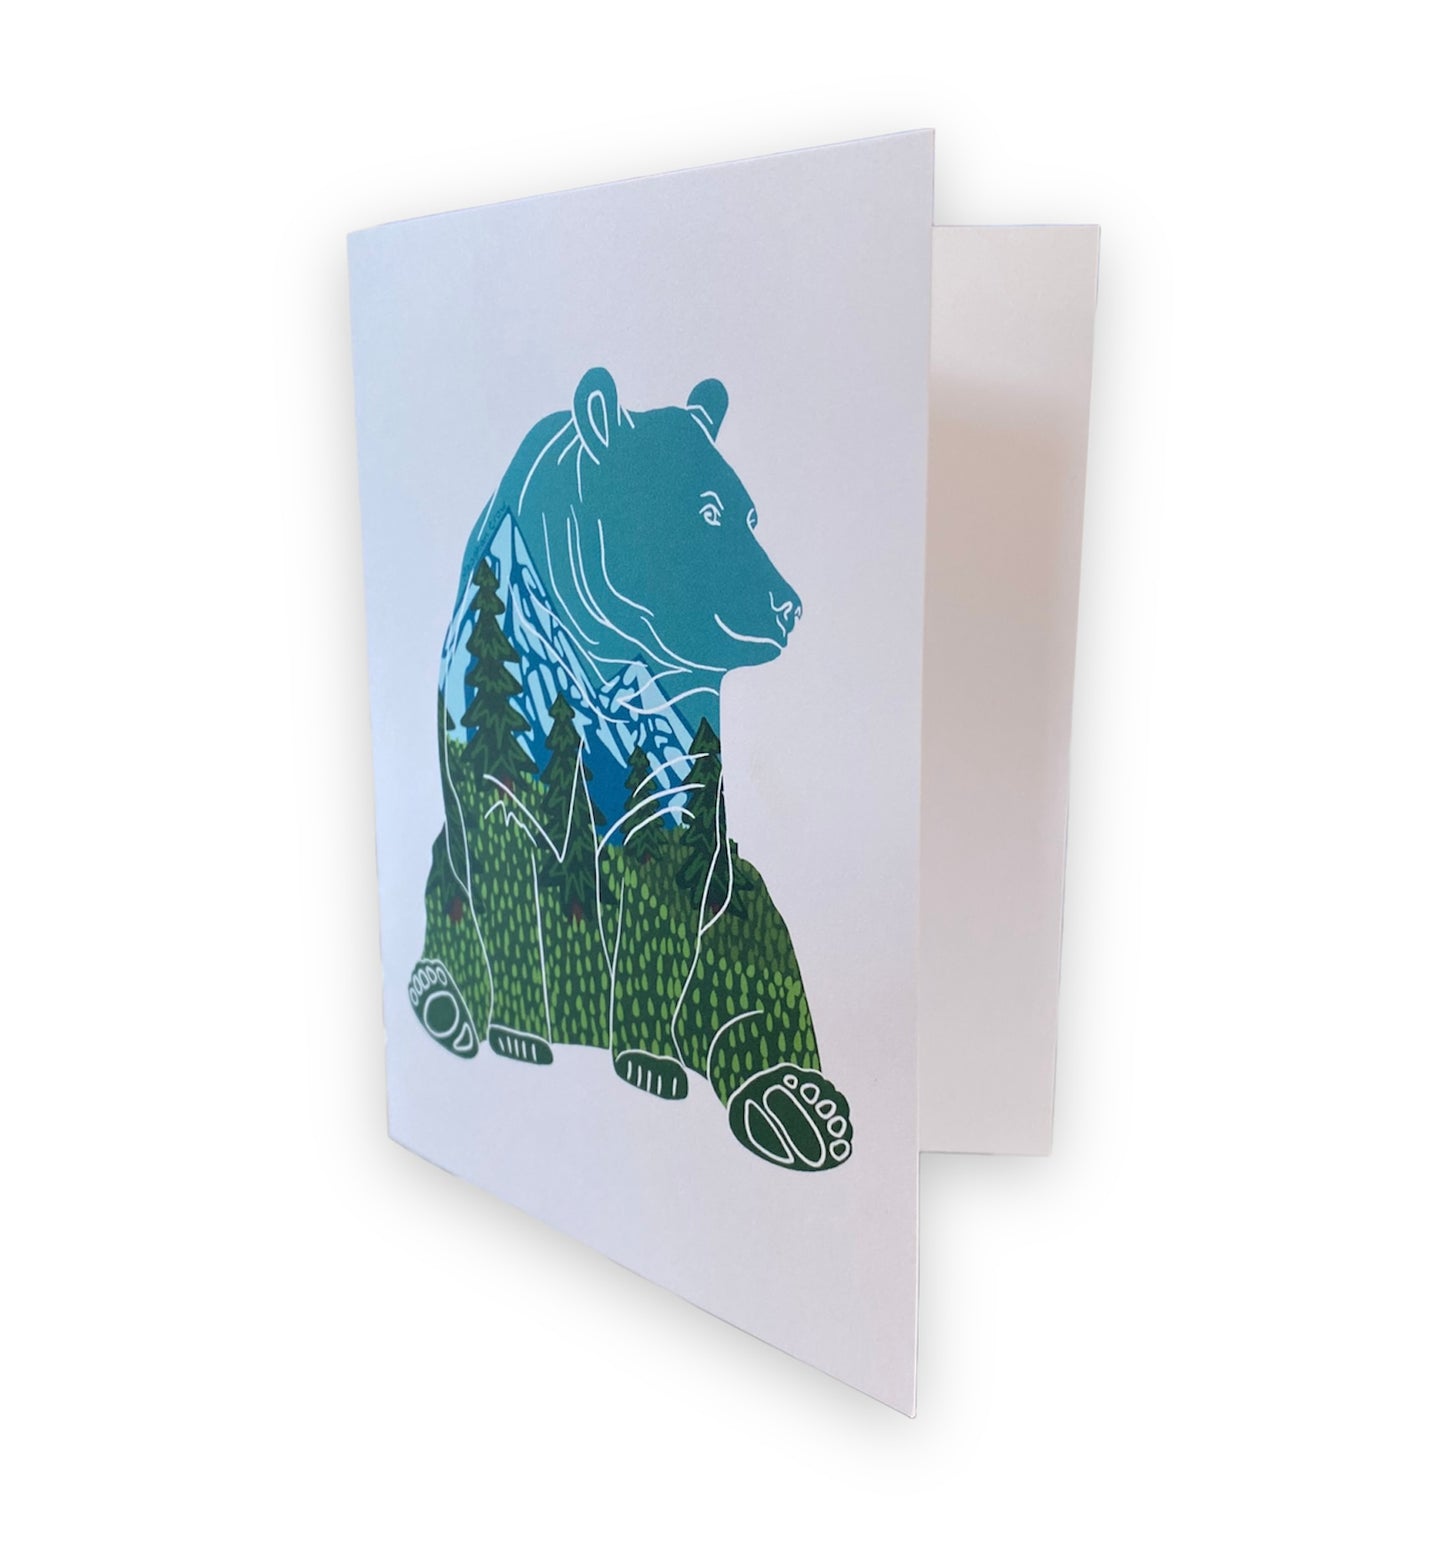 Mountain Bear Art Card